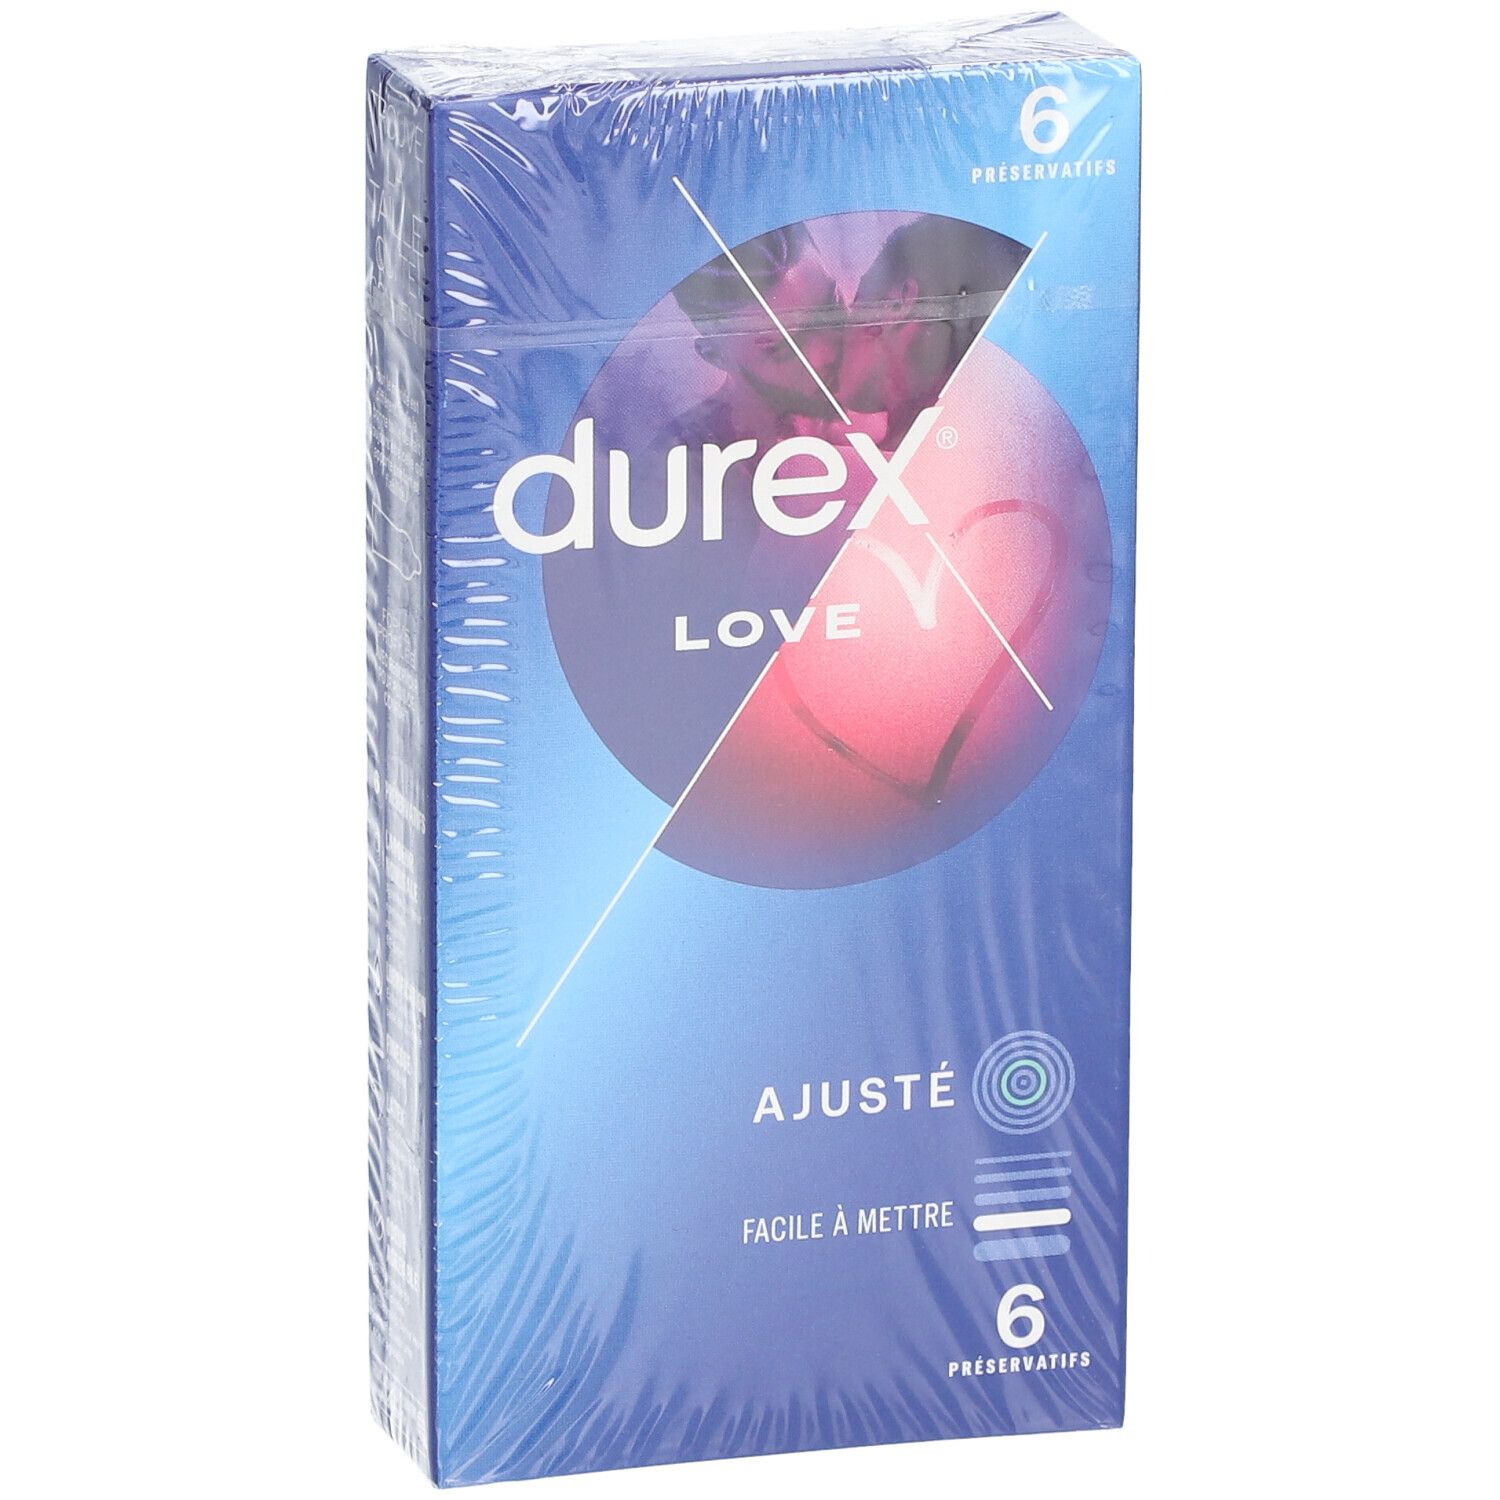 Durex Préservatifs Love - 6 Préservatifs Faciles à mettre